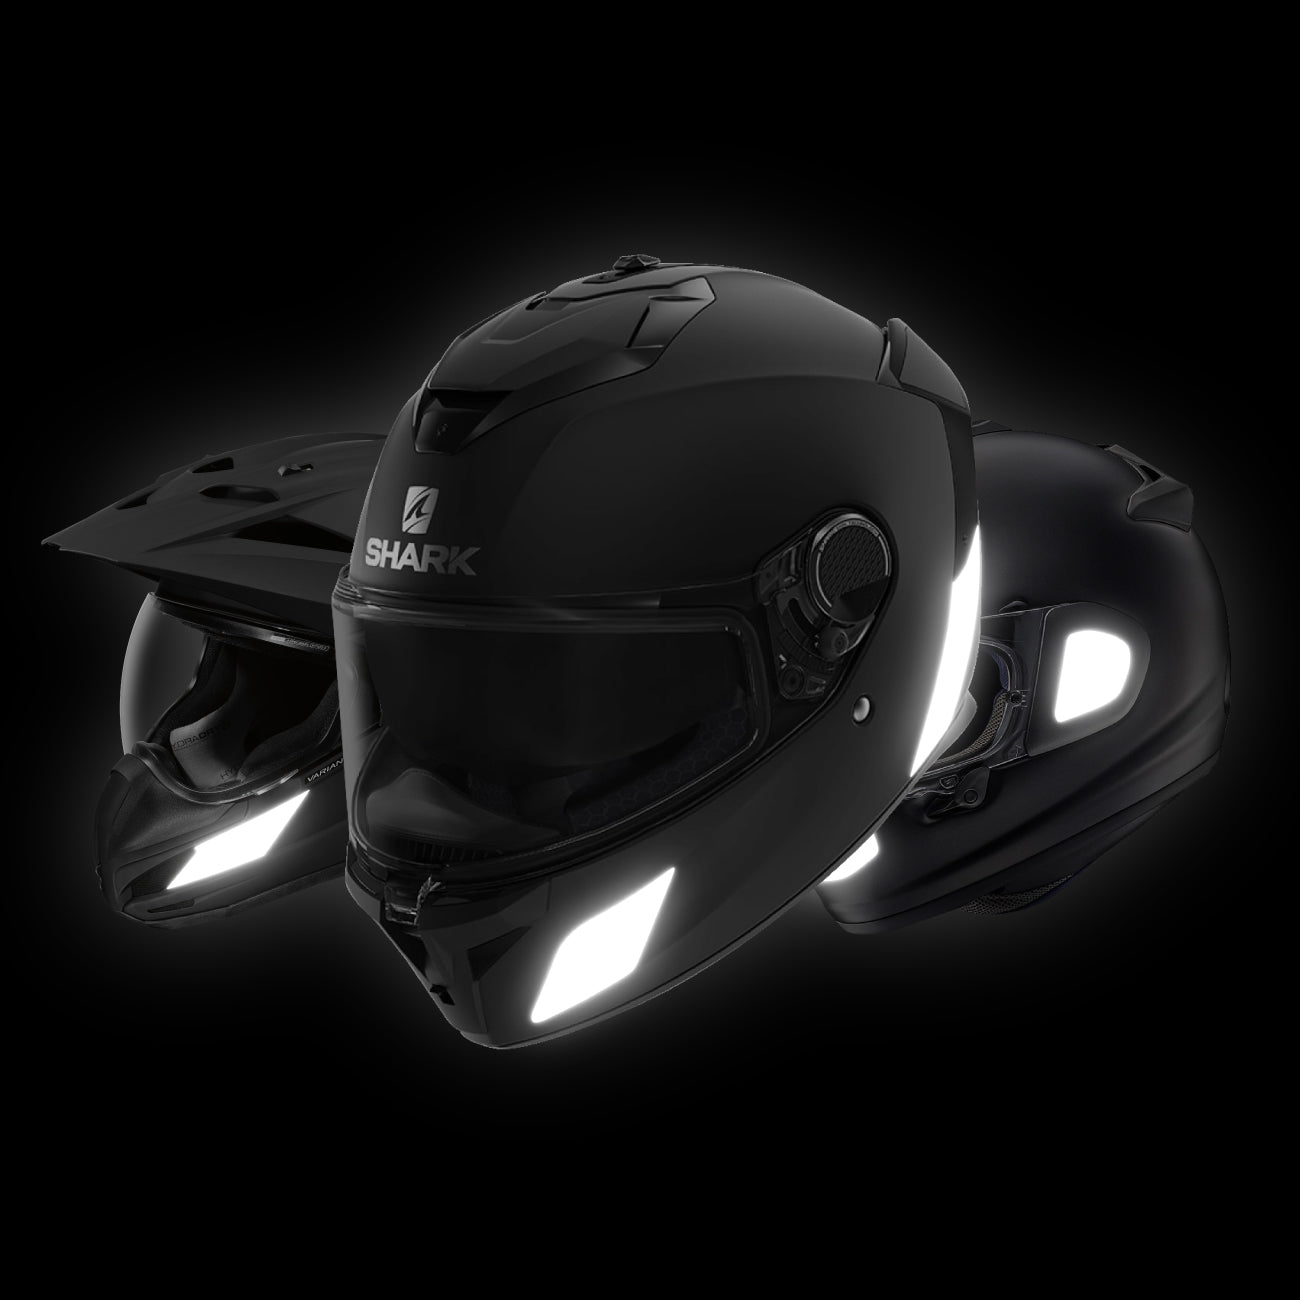 Autocollants réfléchissants noirs Classic Black pour casque moto